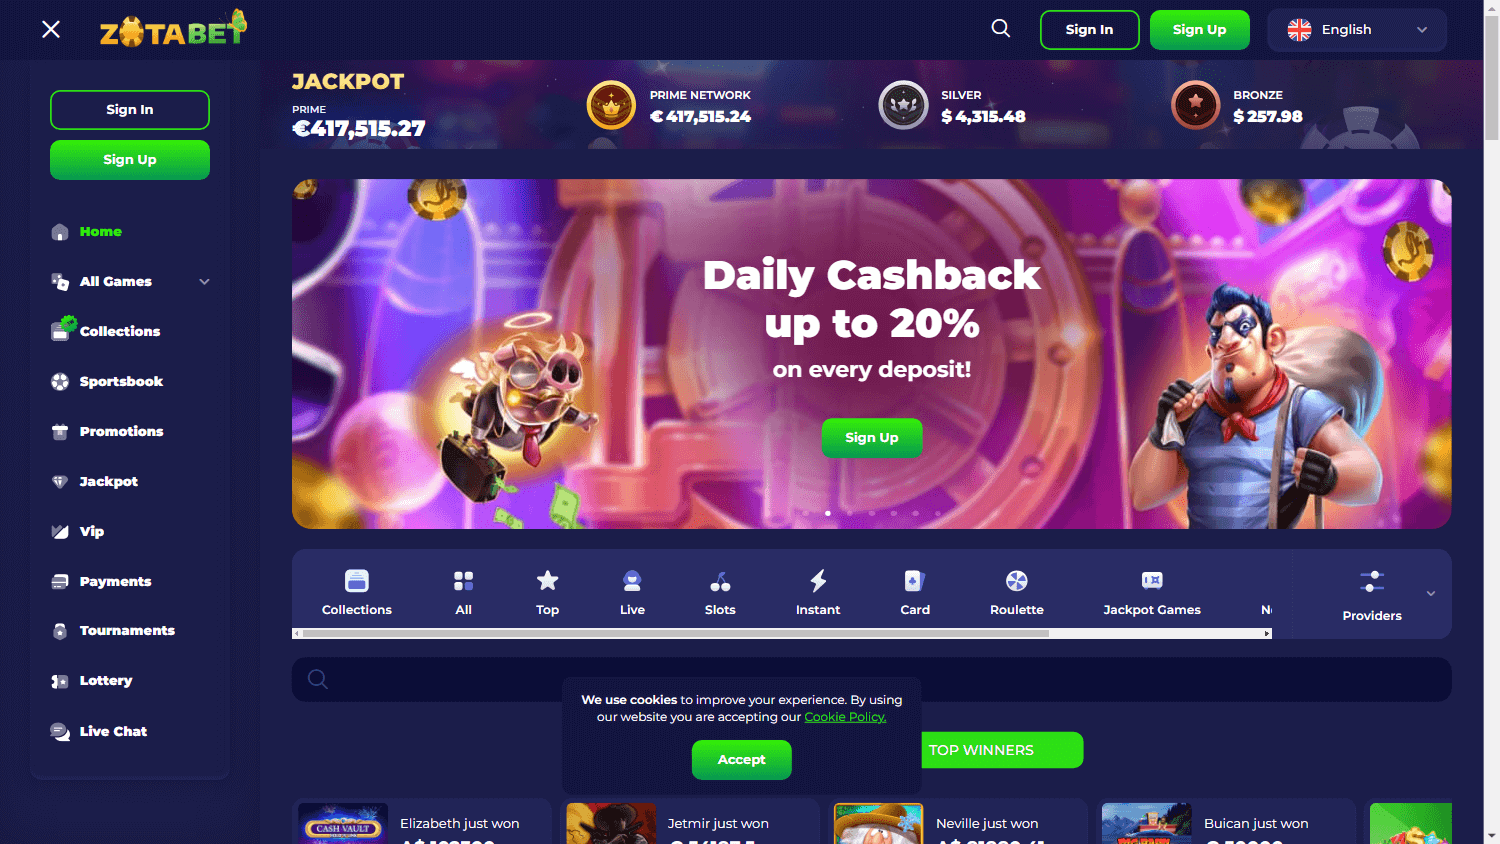 zotabet_casino_homepage_desktop